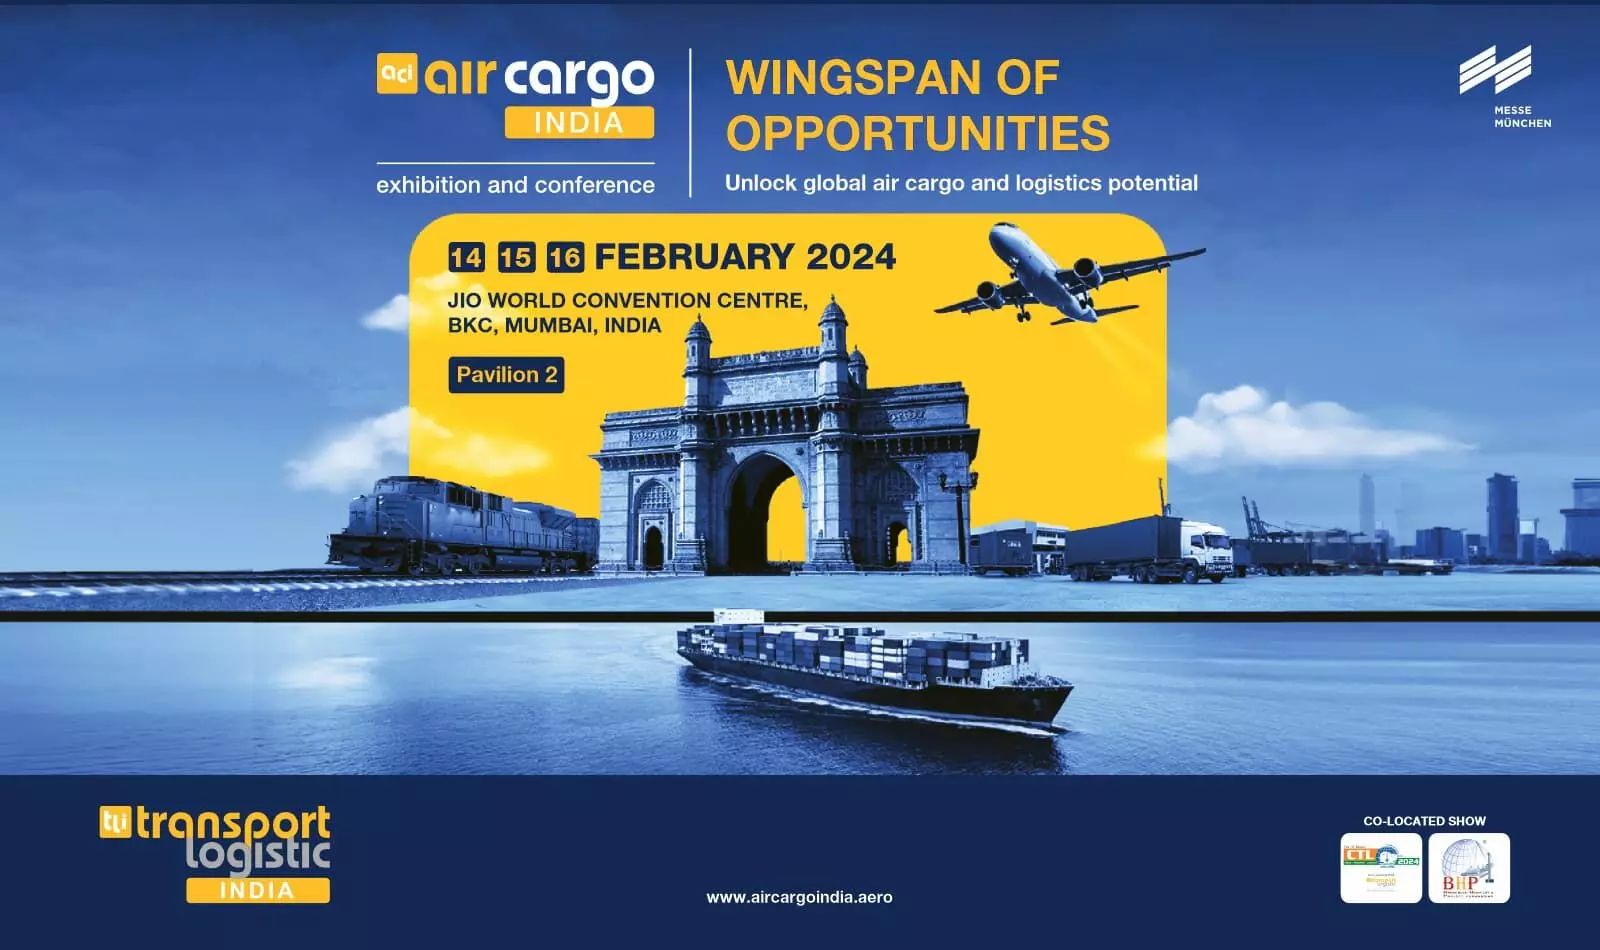 air cargo India 2024 to catalyse ideas around multimodality